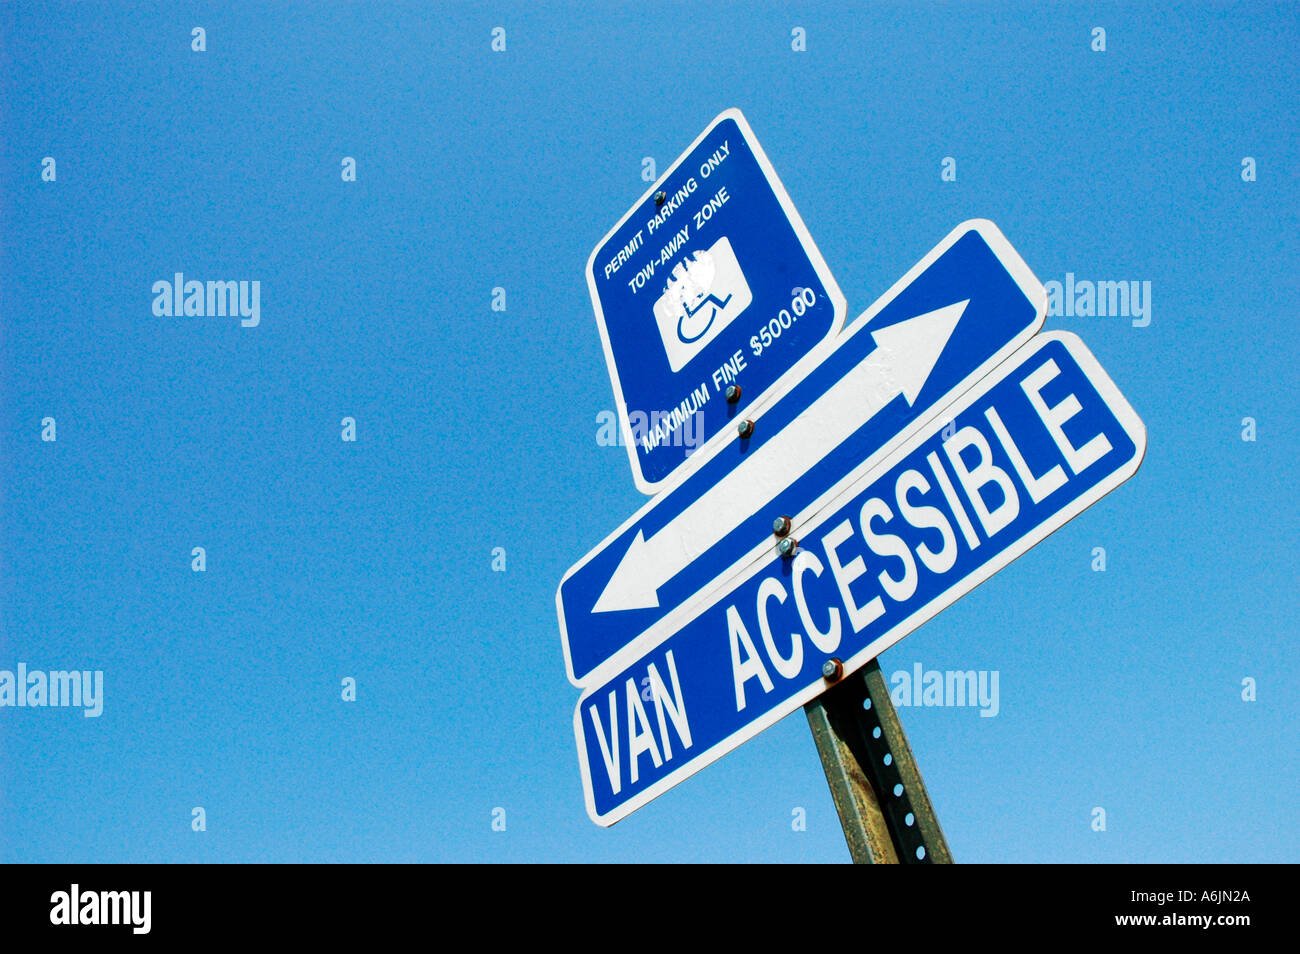 Personnes handicapées et van accessible pour les permis de stationnement avec accès handicapés moteurs Banque D'Images